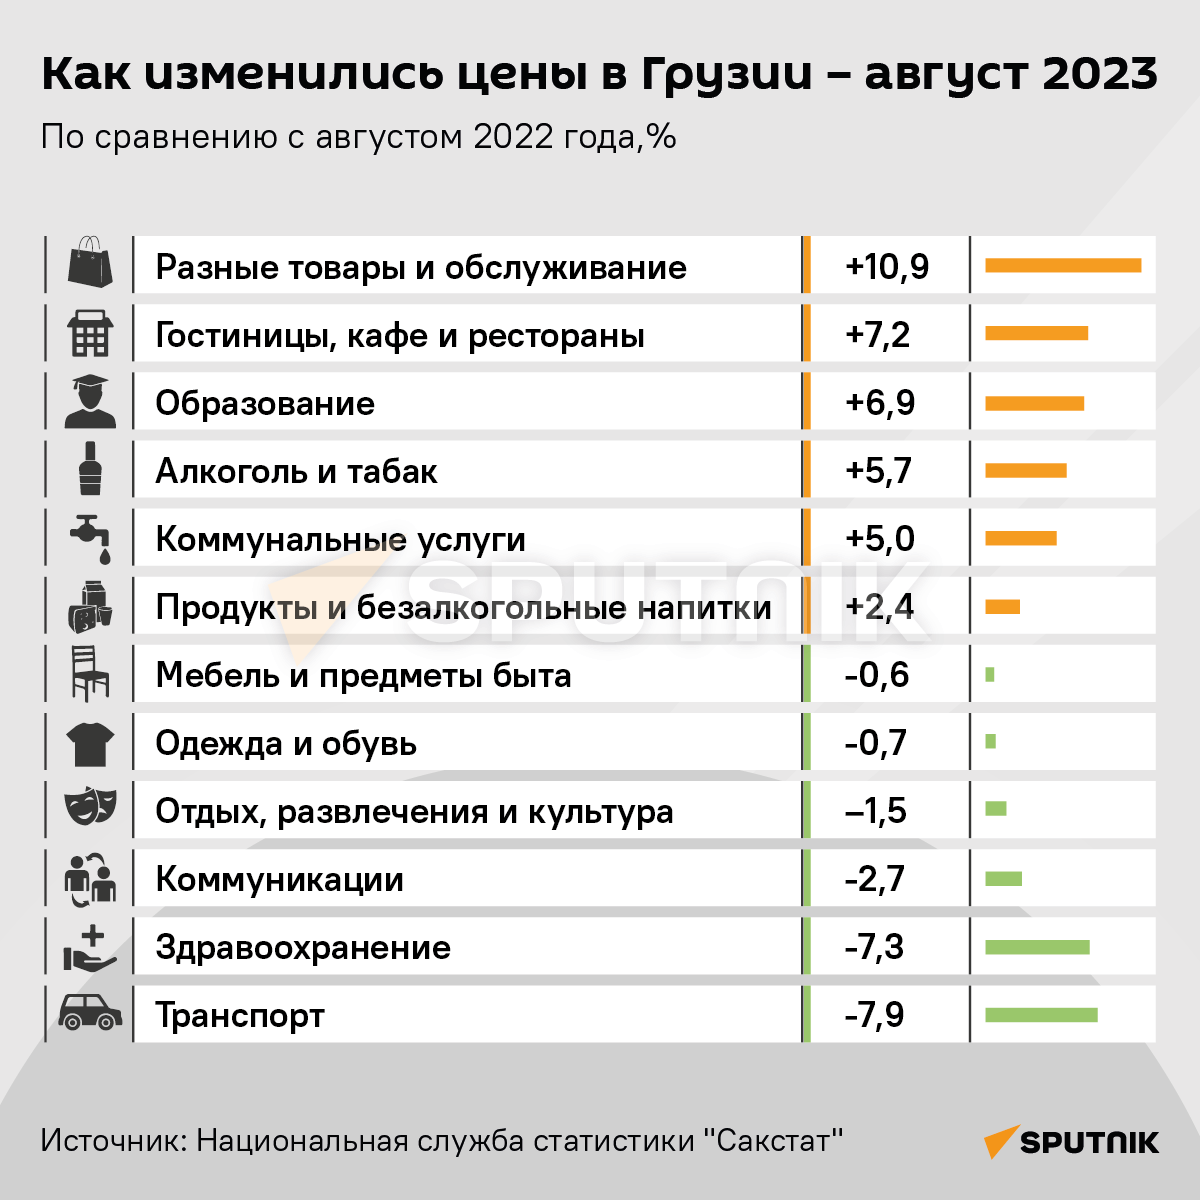 Как изменились цены в Грузии - август 2023 - Sputnik Грузия